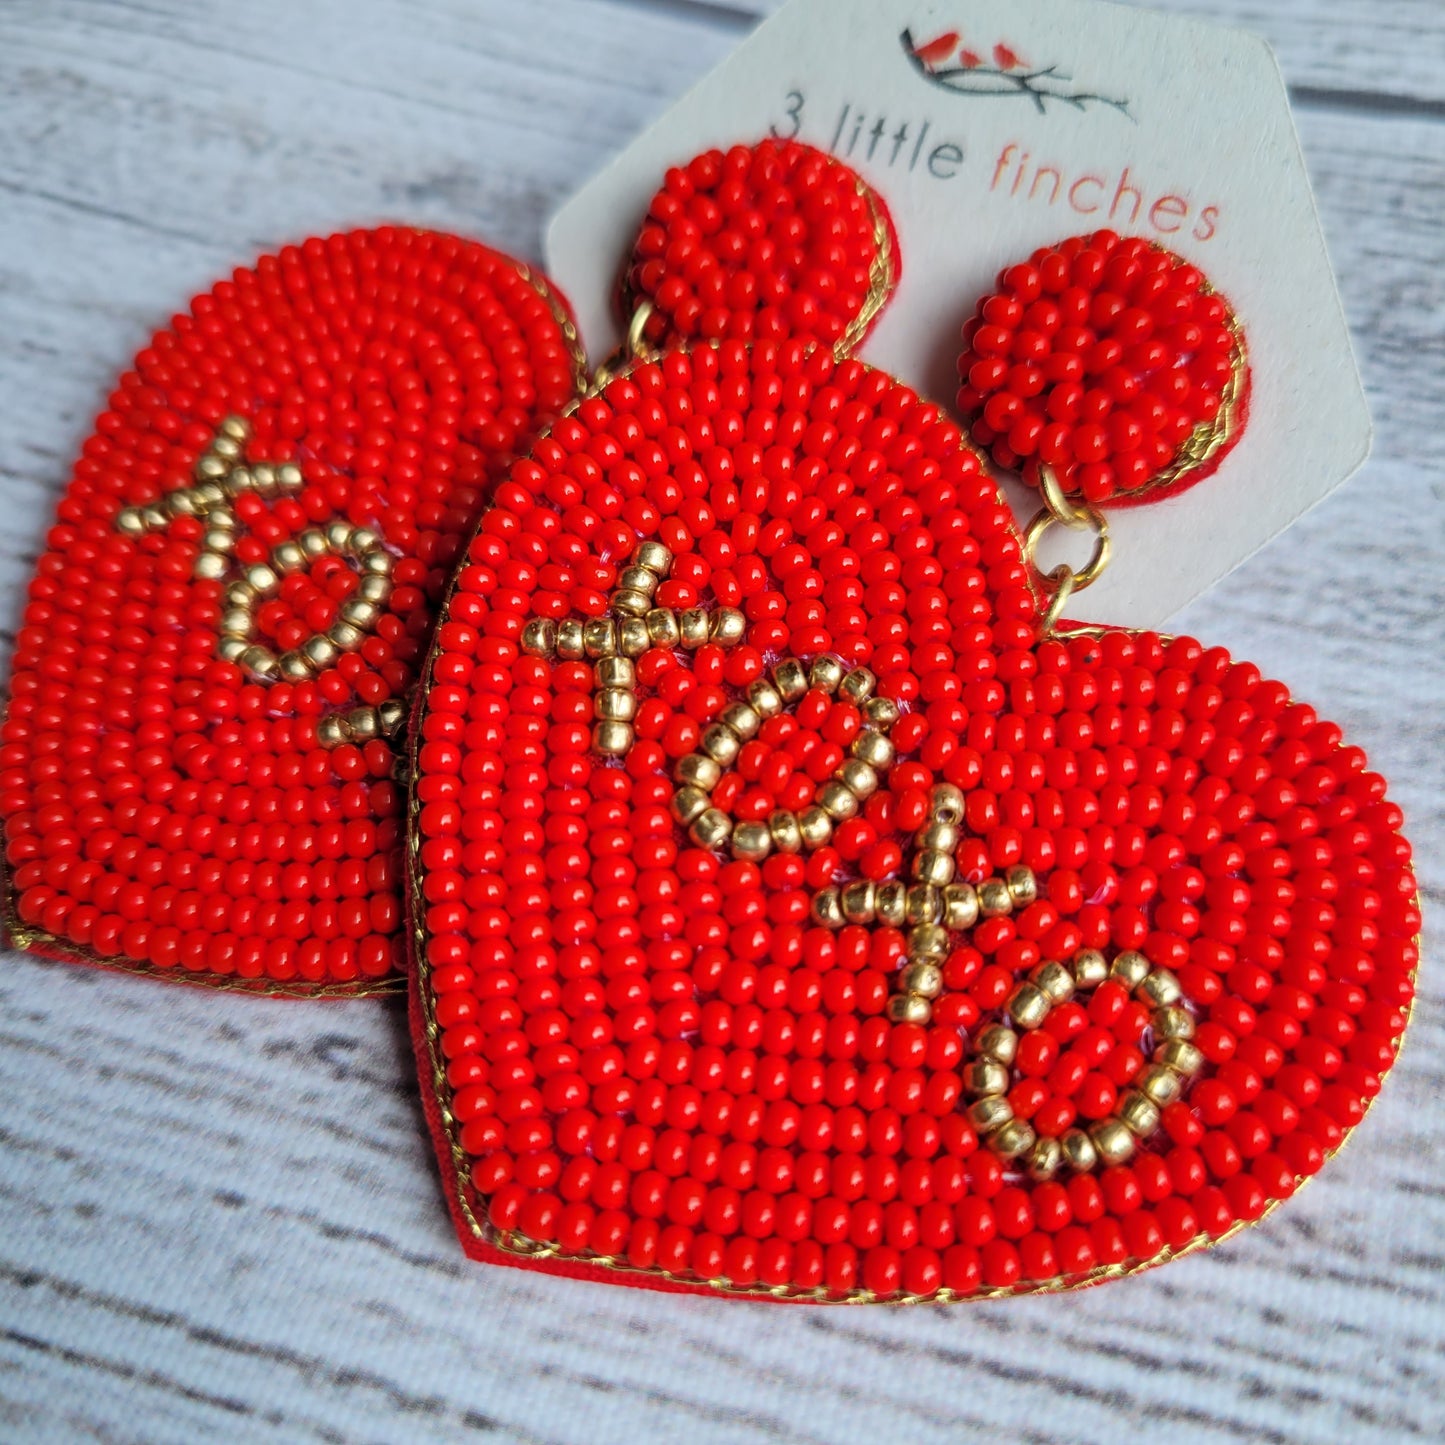 XOXO Red Heart Earrings